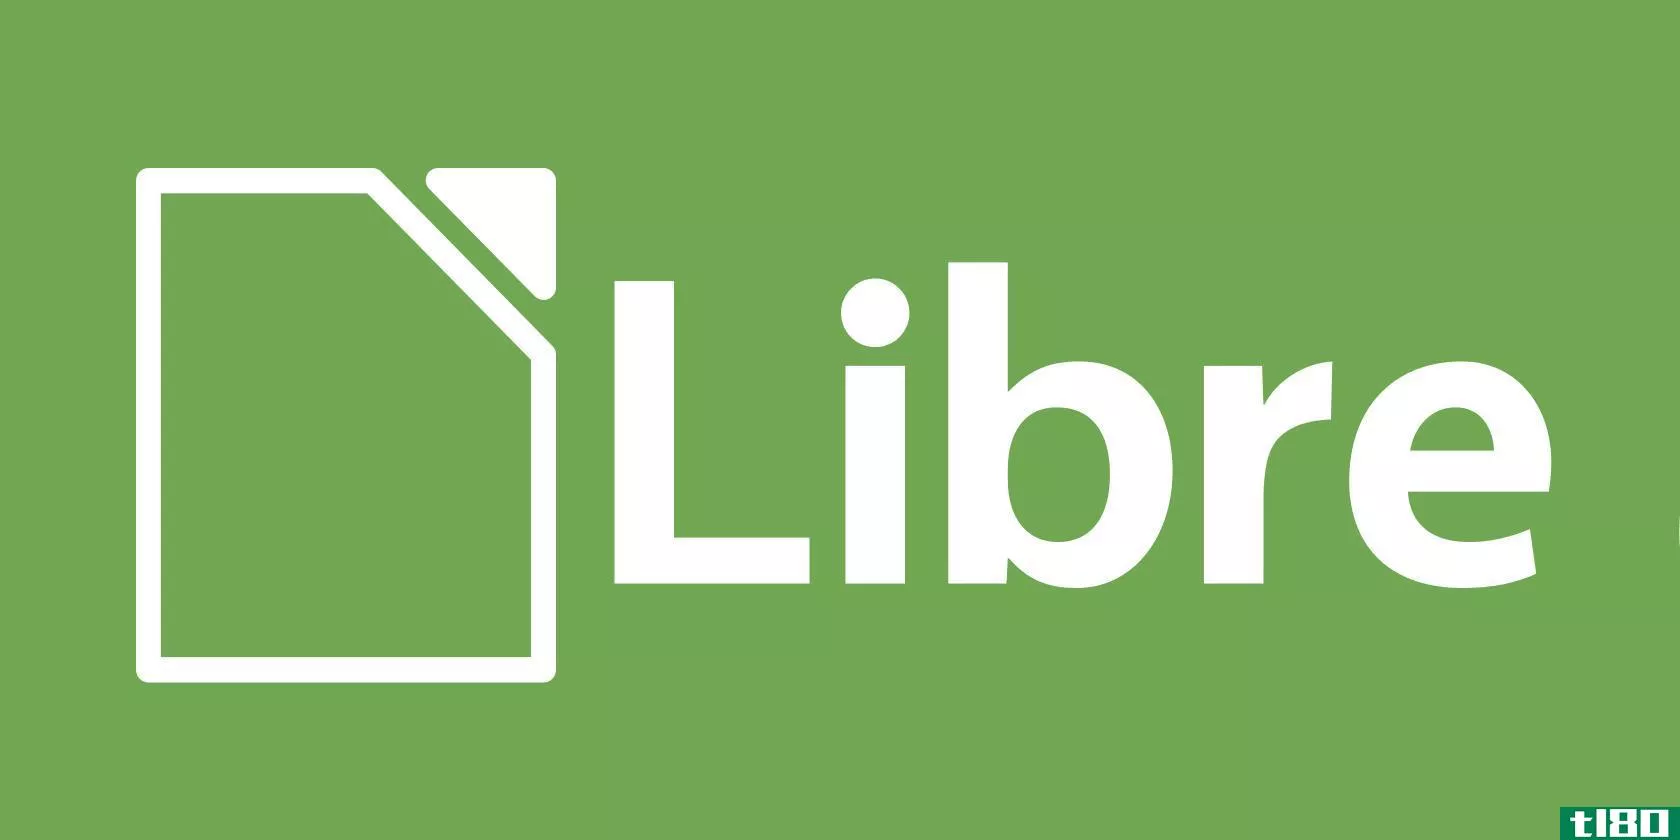 libreoffice-logo-intro